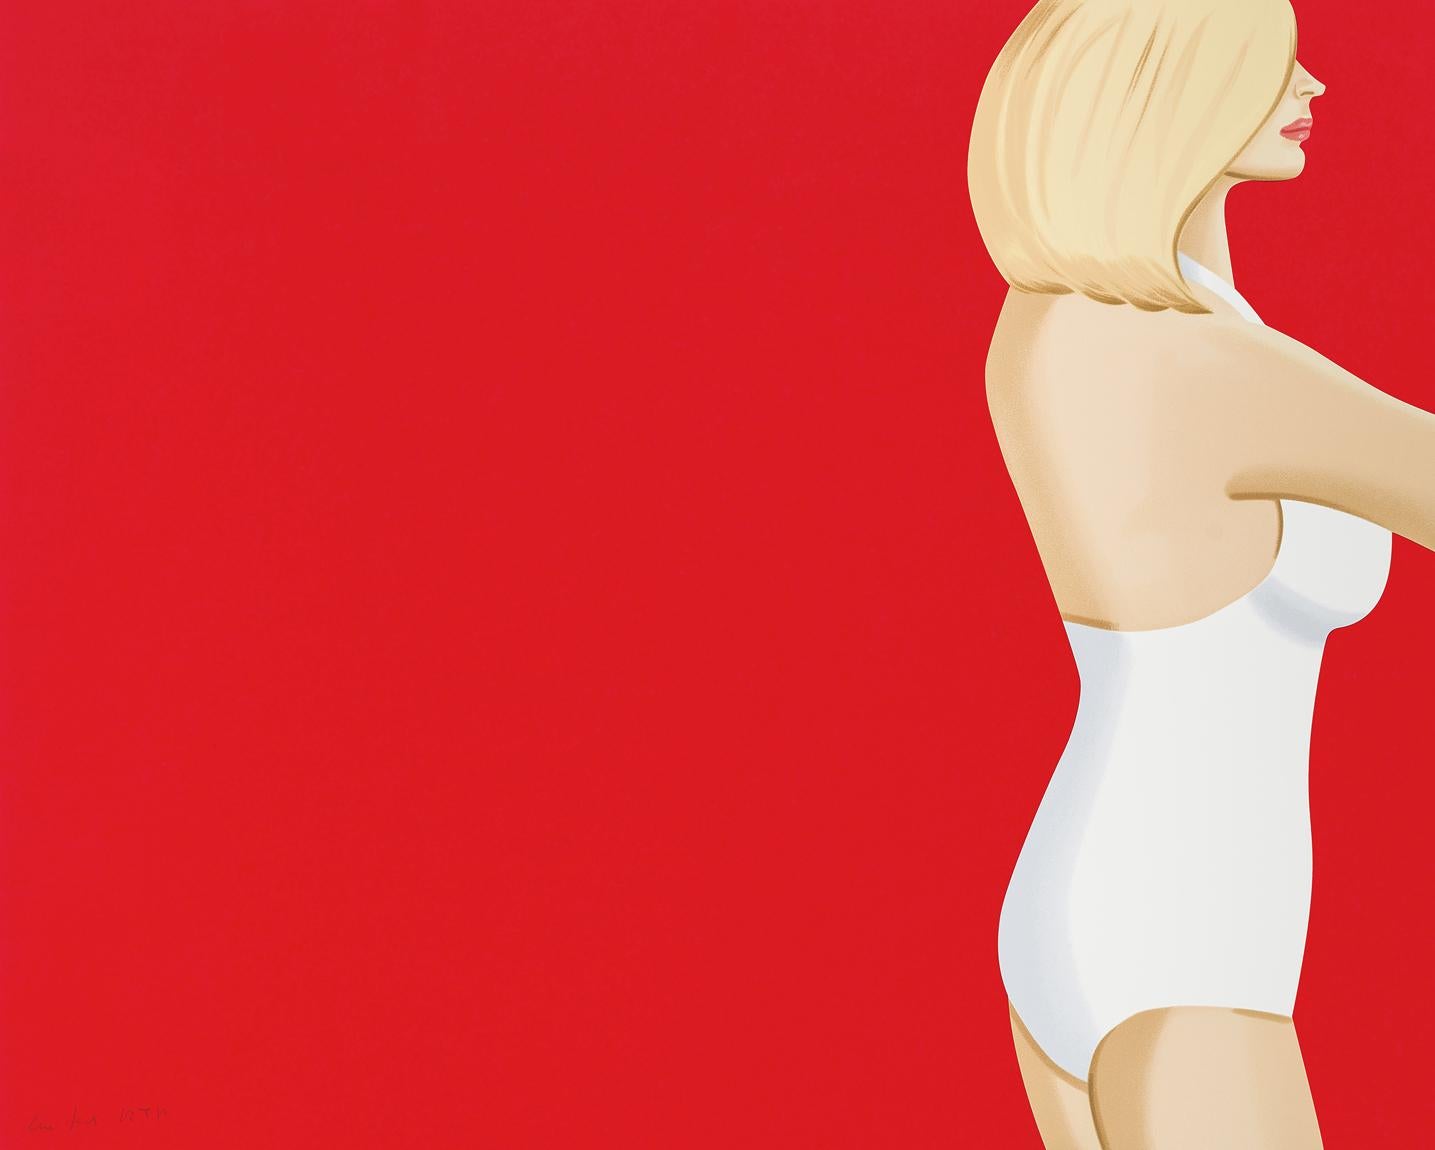 Costume de bain rouge pour femme Coca-Cola Girl 3 - 21e siècle, contemporain d'Alex Katz